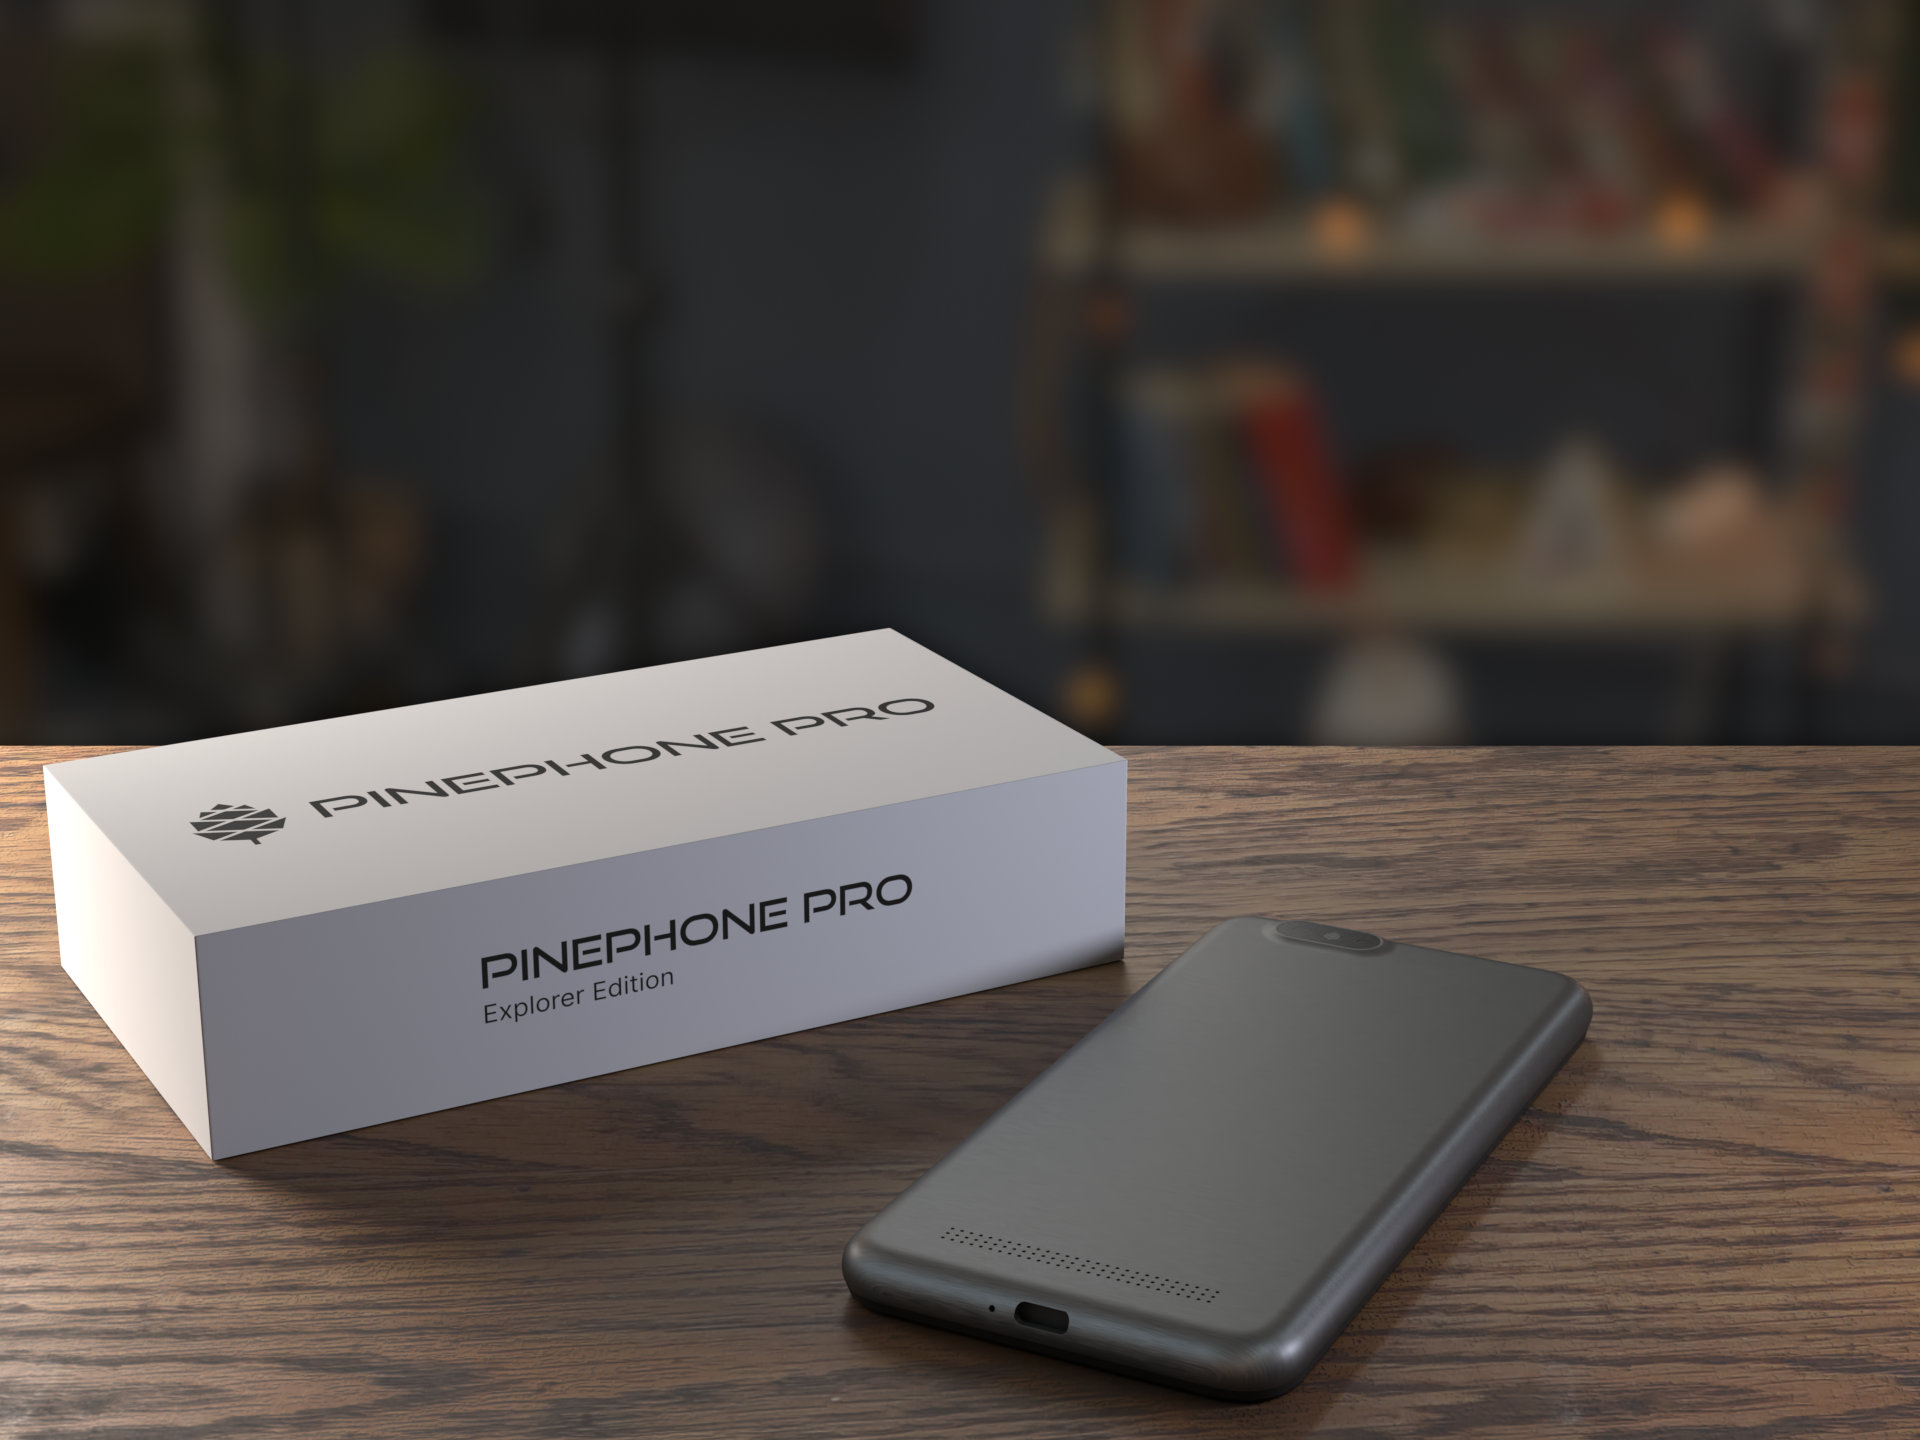 A PinePhone Pro sitting next to its box.